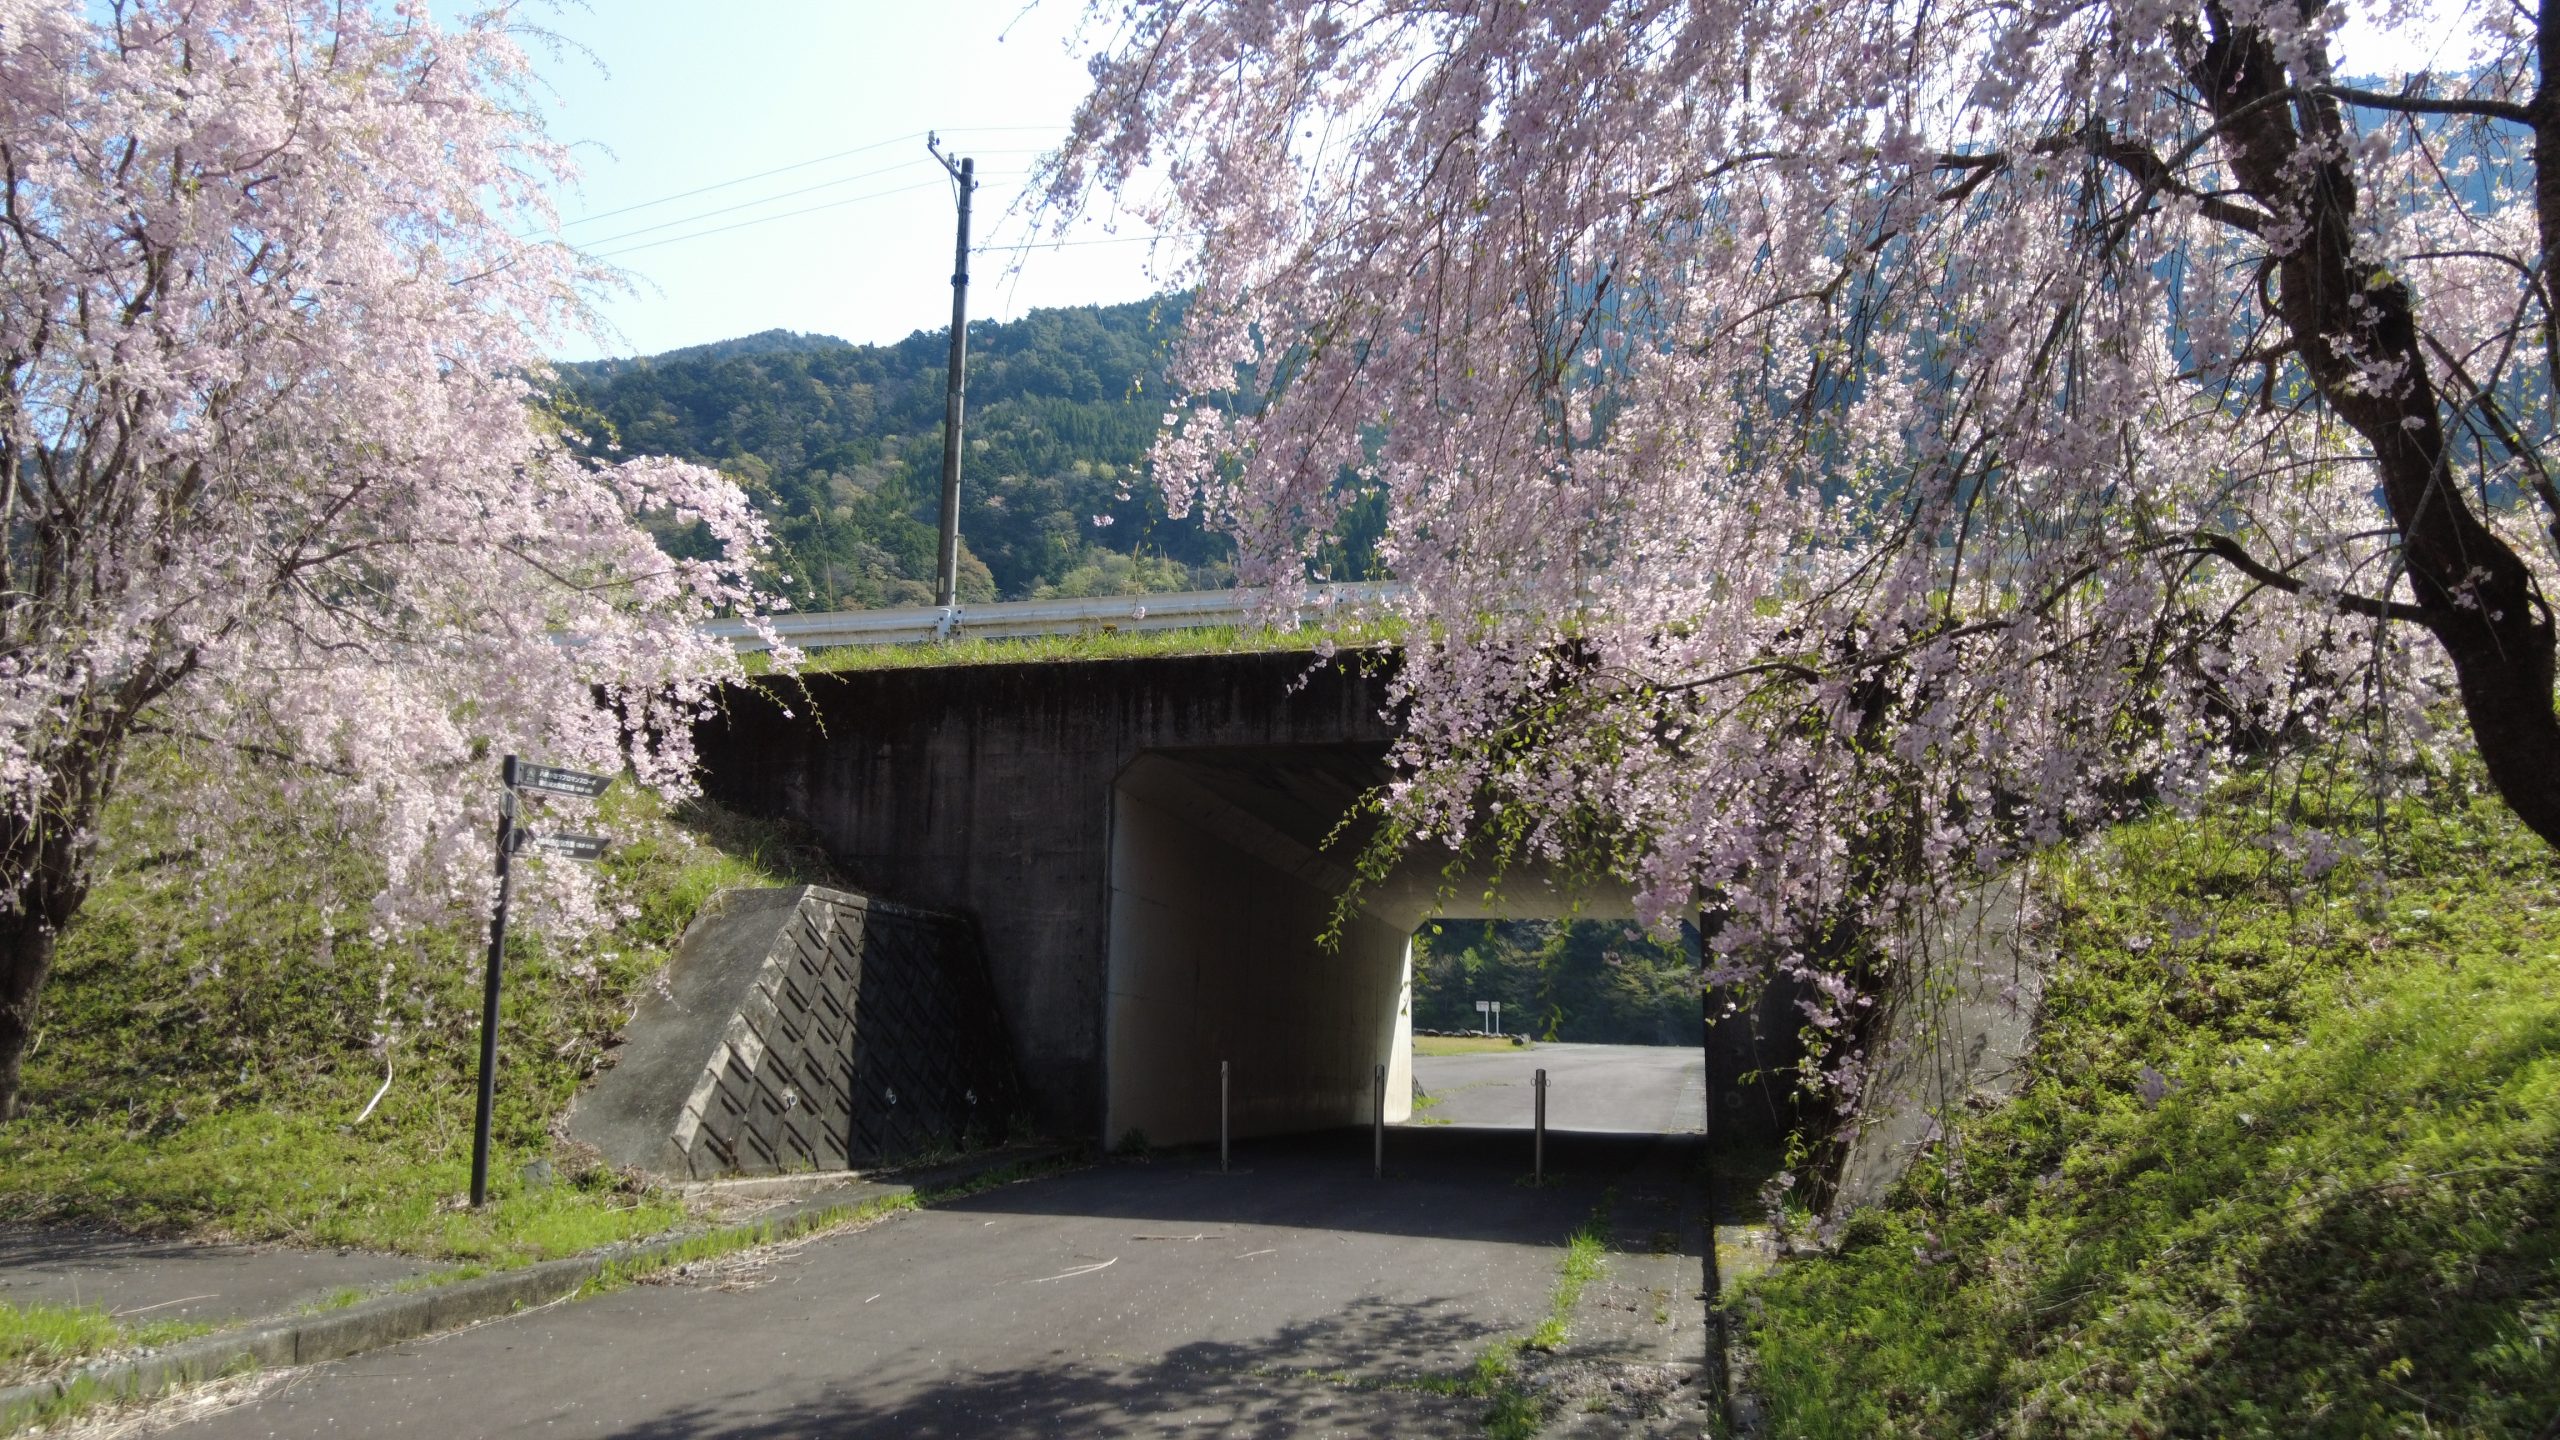 長島公園から道路の下をくぐると、南アルプス大吊橋へとつながる道がありました。